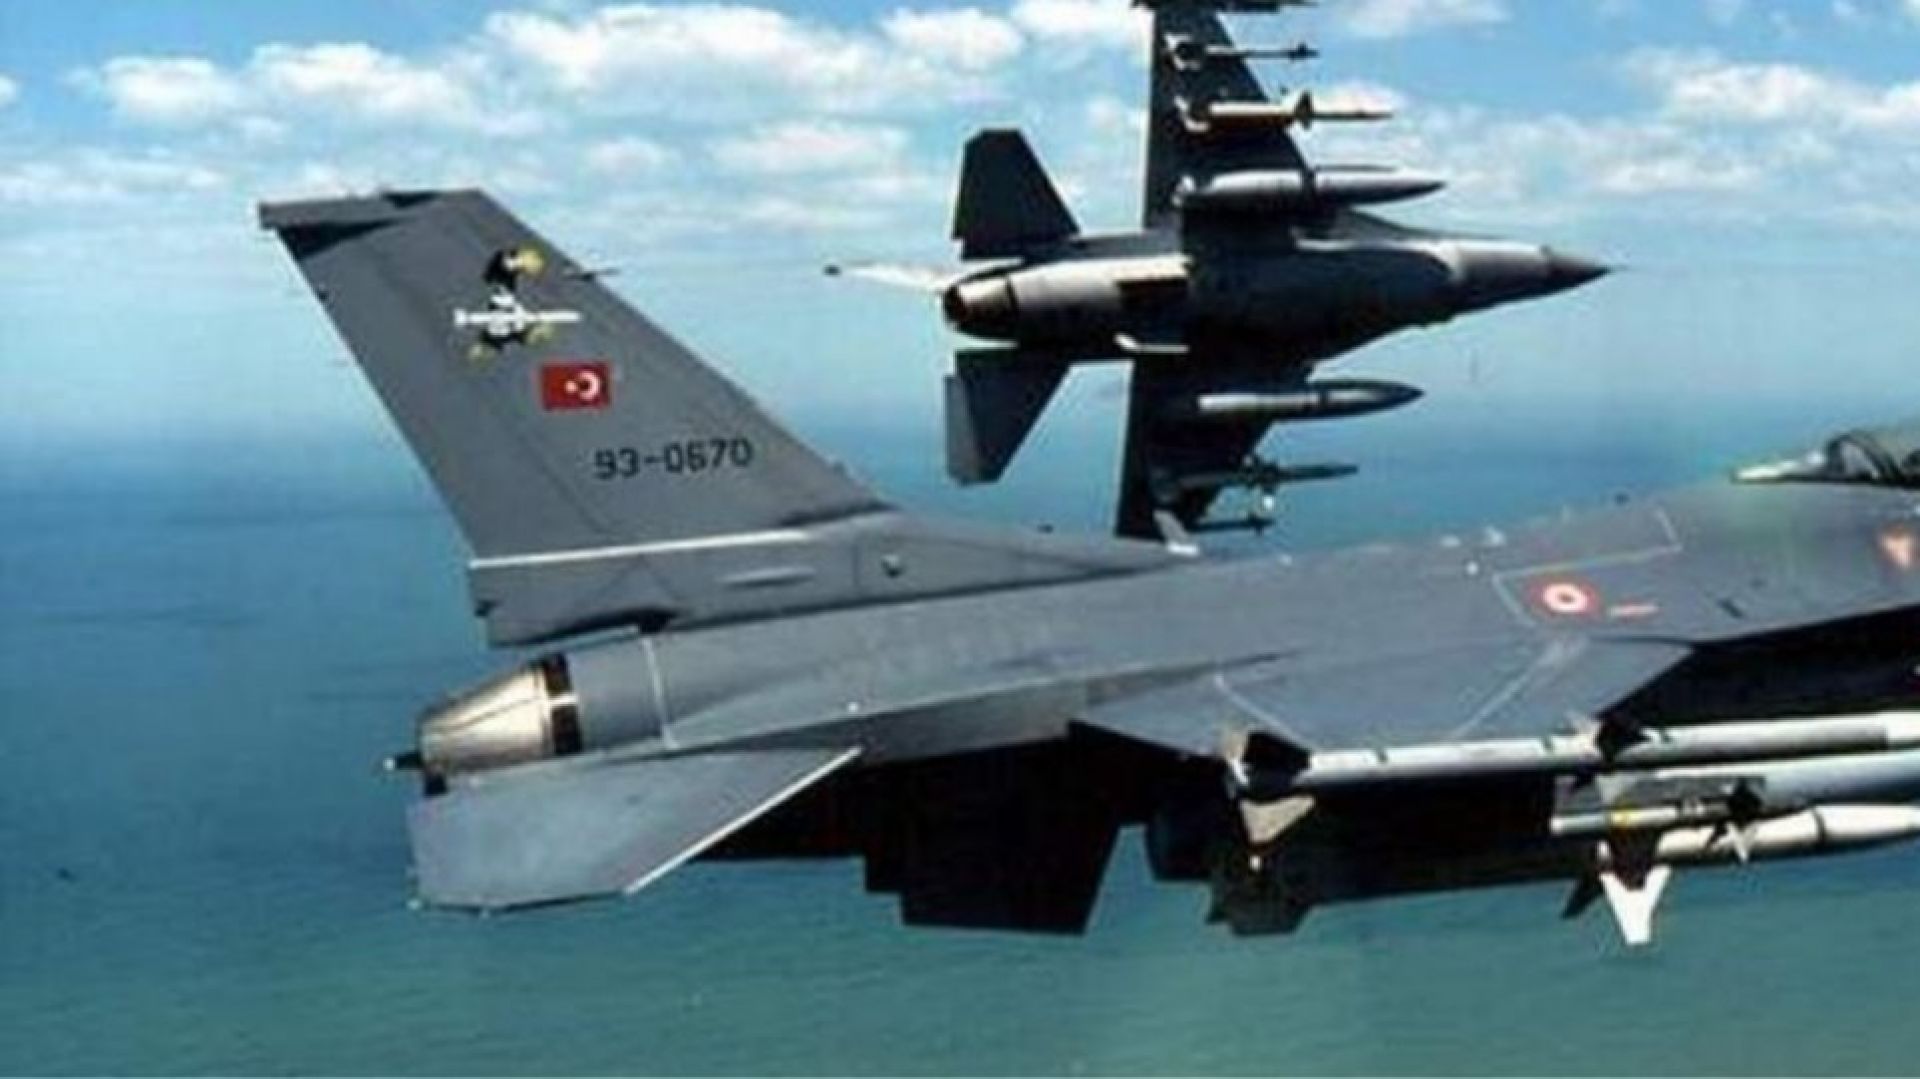 Μπαράζ τουρκικής επιθετικότητας: 69 παραβιάσεις και 5 εικονικές αερομαχίες πάνω από το Αιγαίο